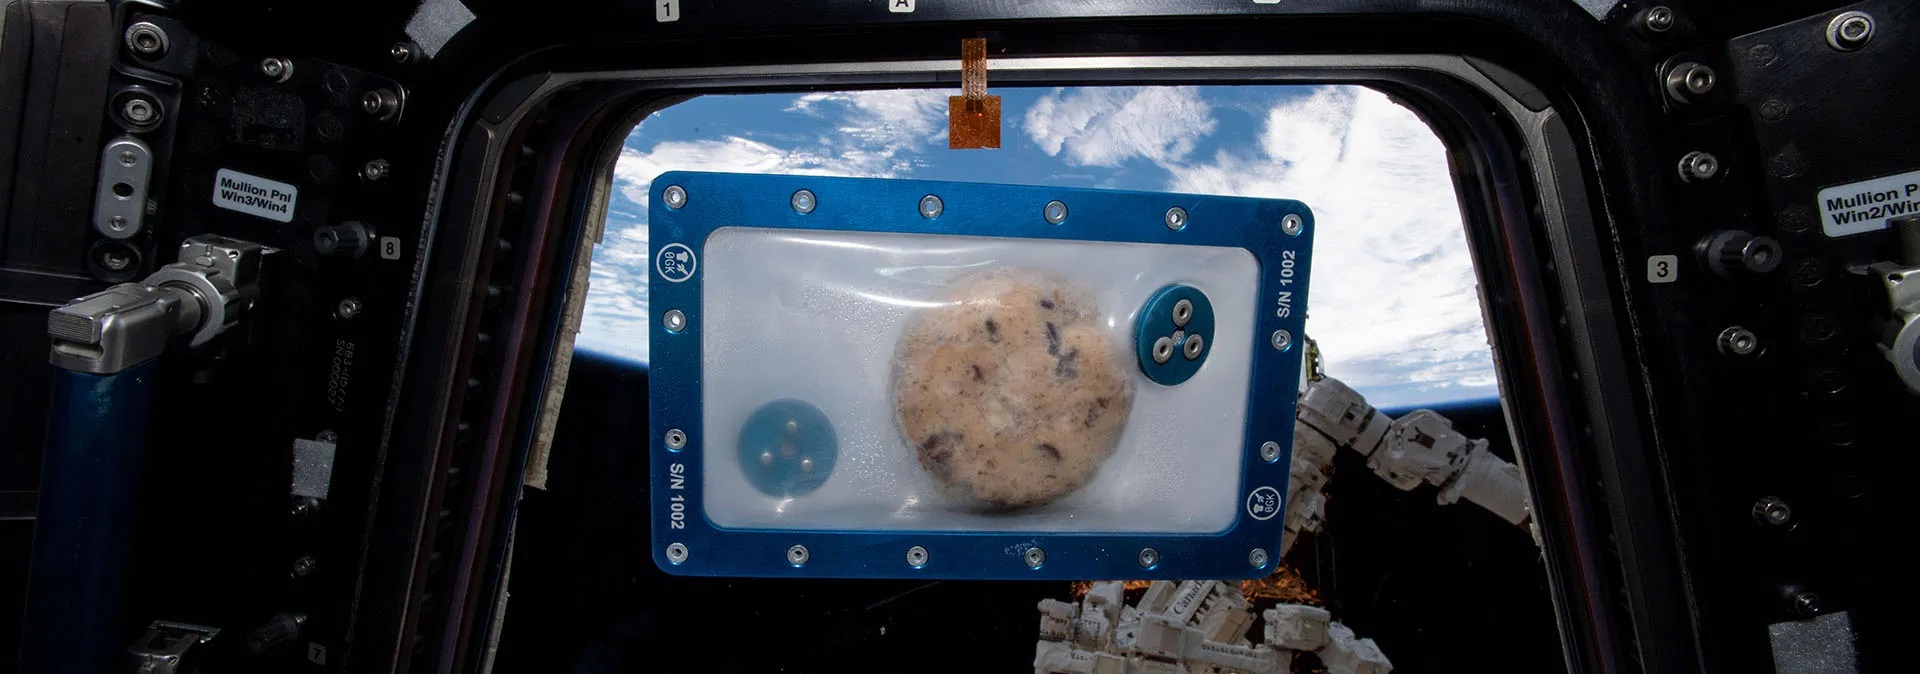 La 1ª galleta horneada en el espacio está en exposición y mantiene su aroma